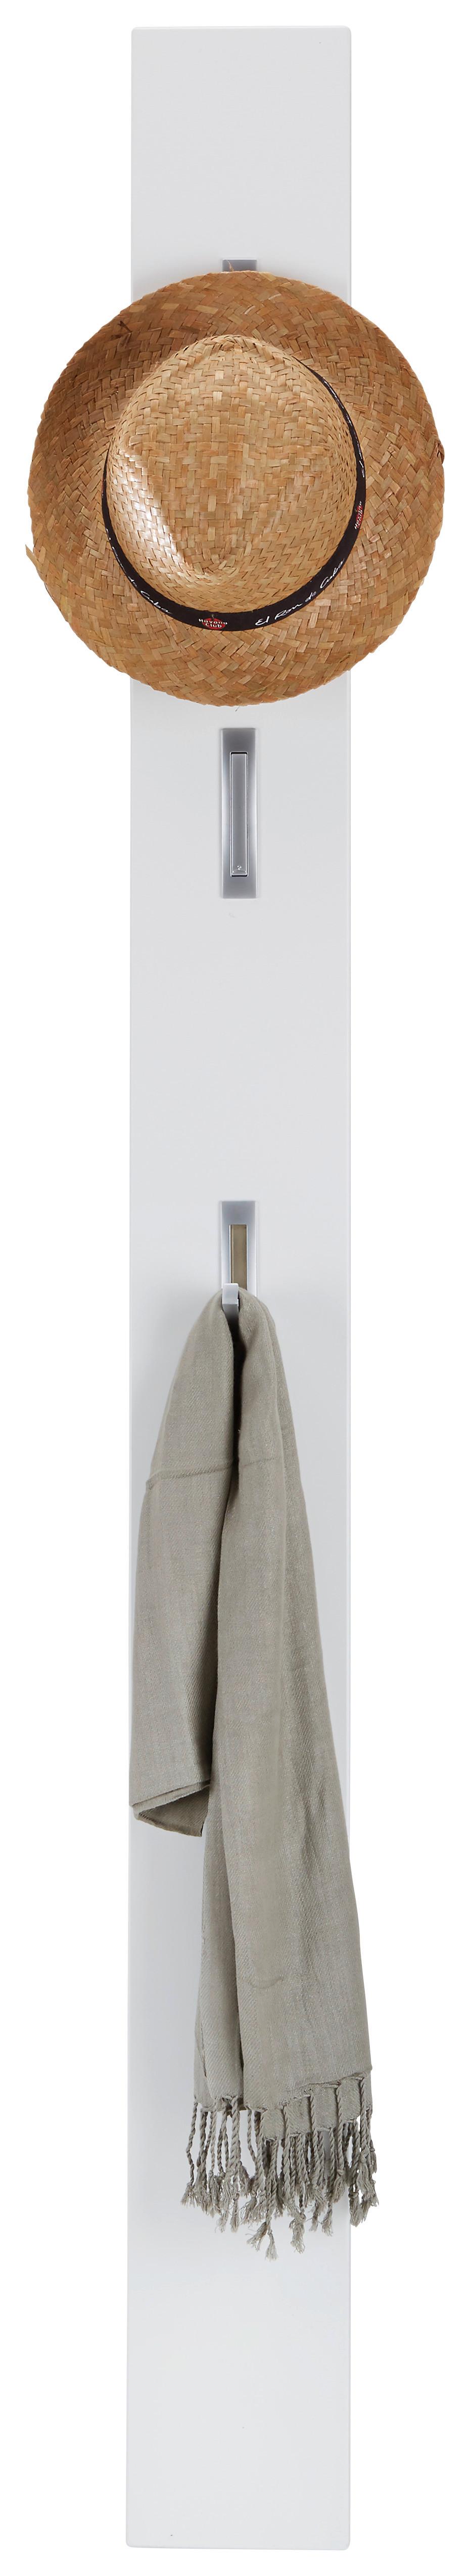 Garderobenleiste Weiß - Weiß, MODERN, Holzwerkstoff (15/170/3cm)